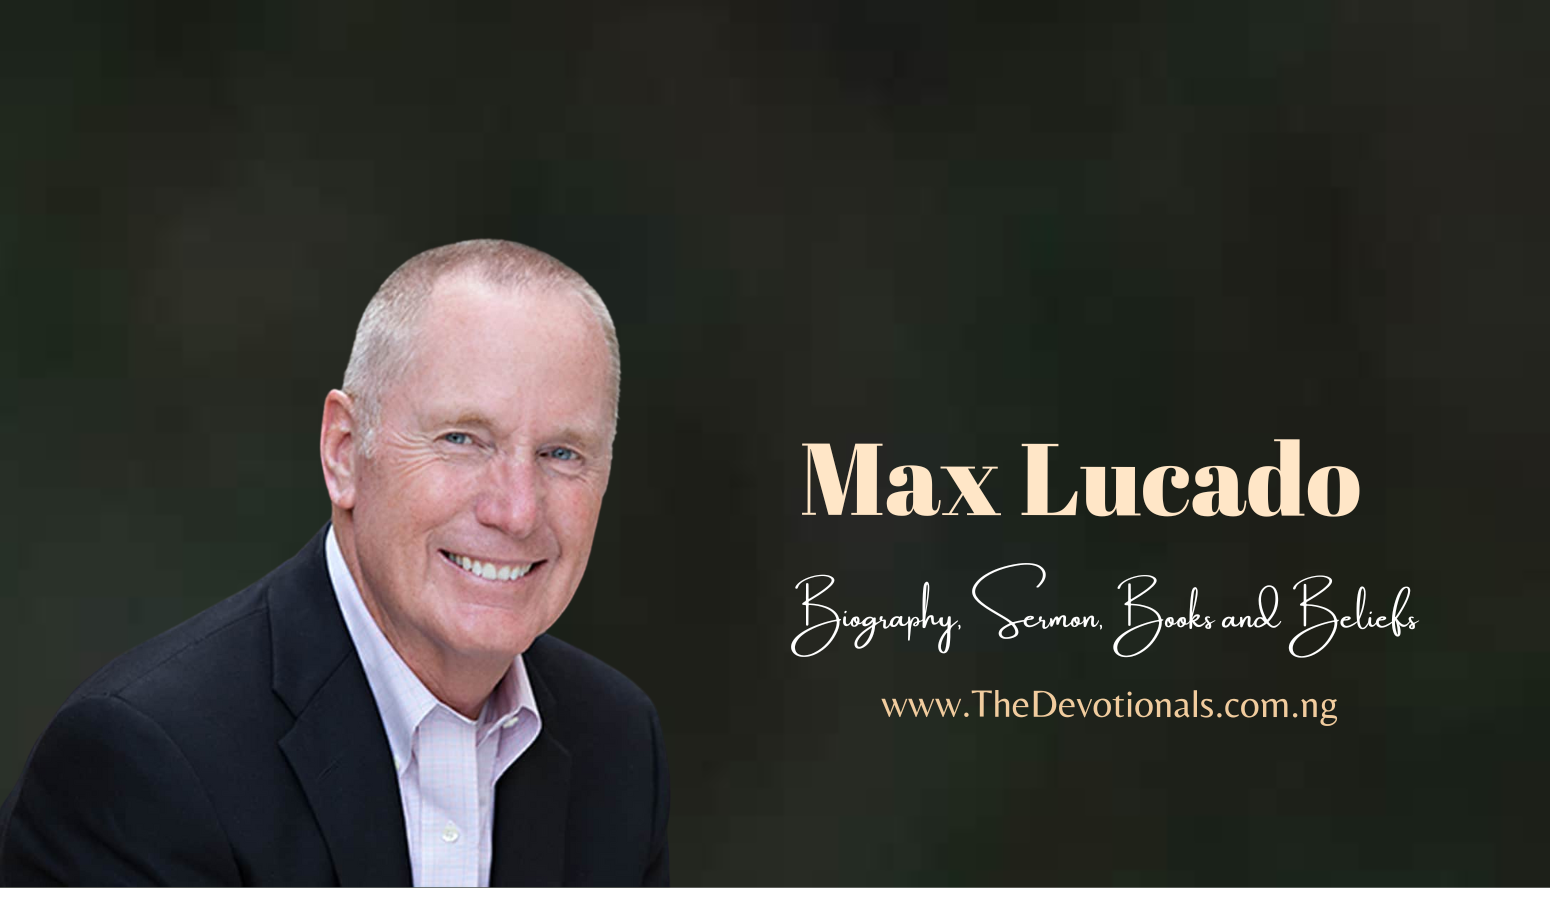 Max Lucado's Profile, Sermon, Books